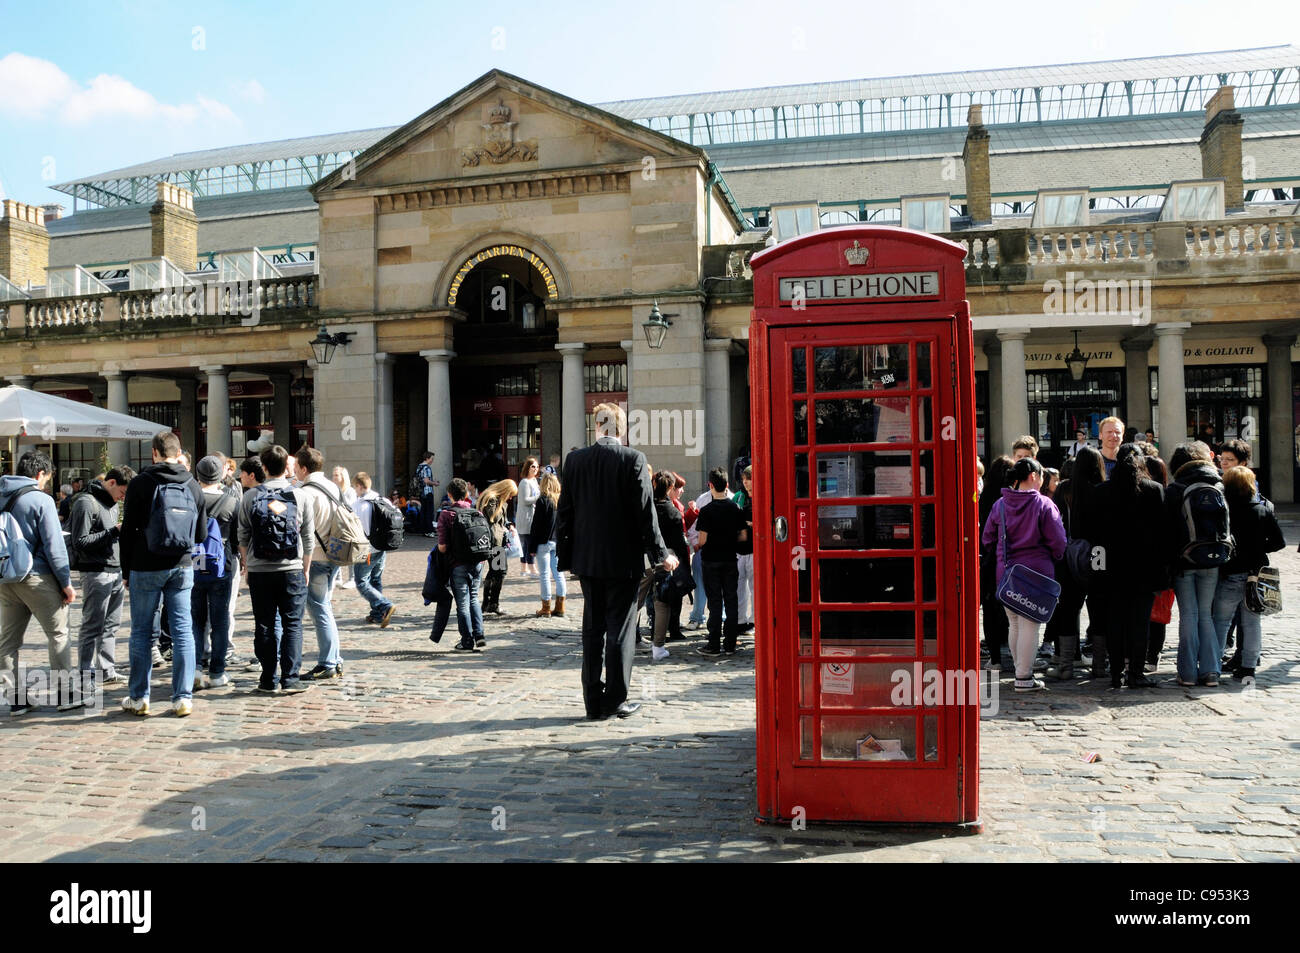 Marché couvert de Covent Garden avec boîte de téléphone rouge en premier plan et les gens derrière Londres Angleterre Royaume-uni Banque D'Images